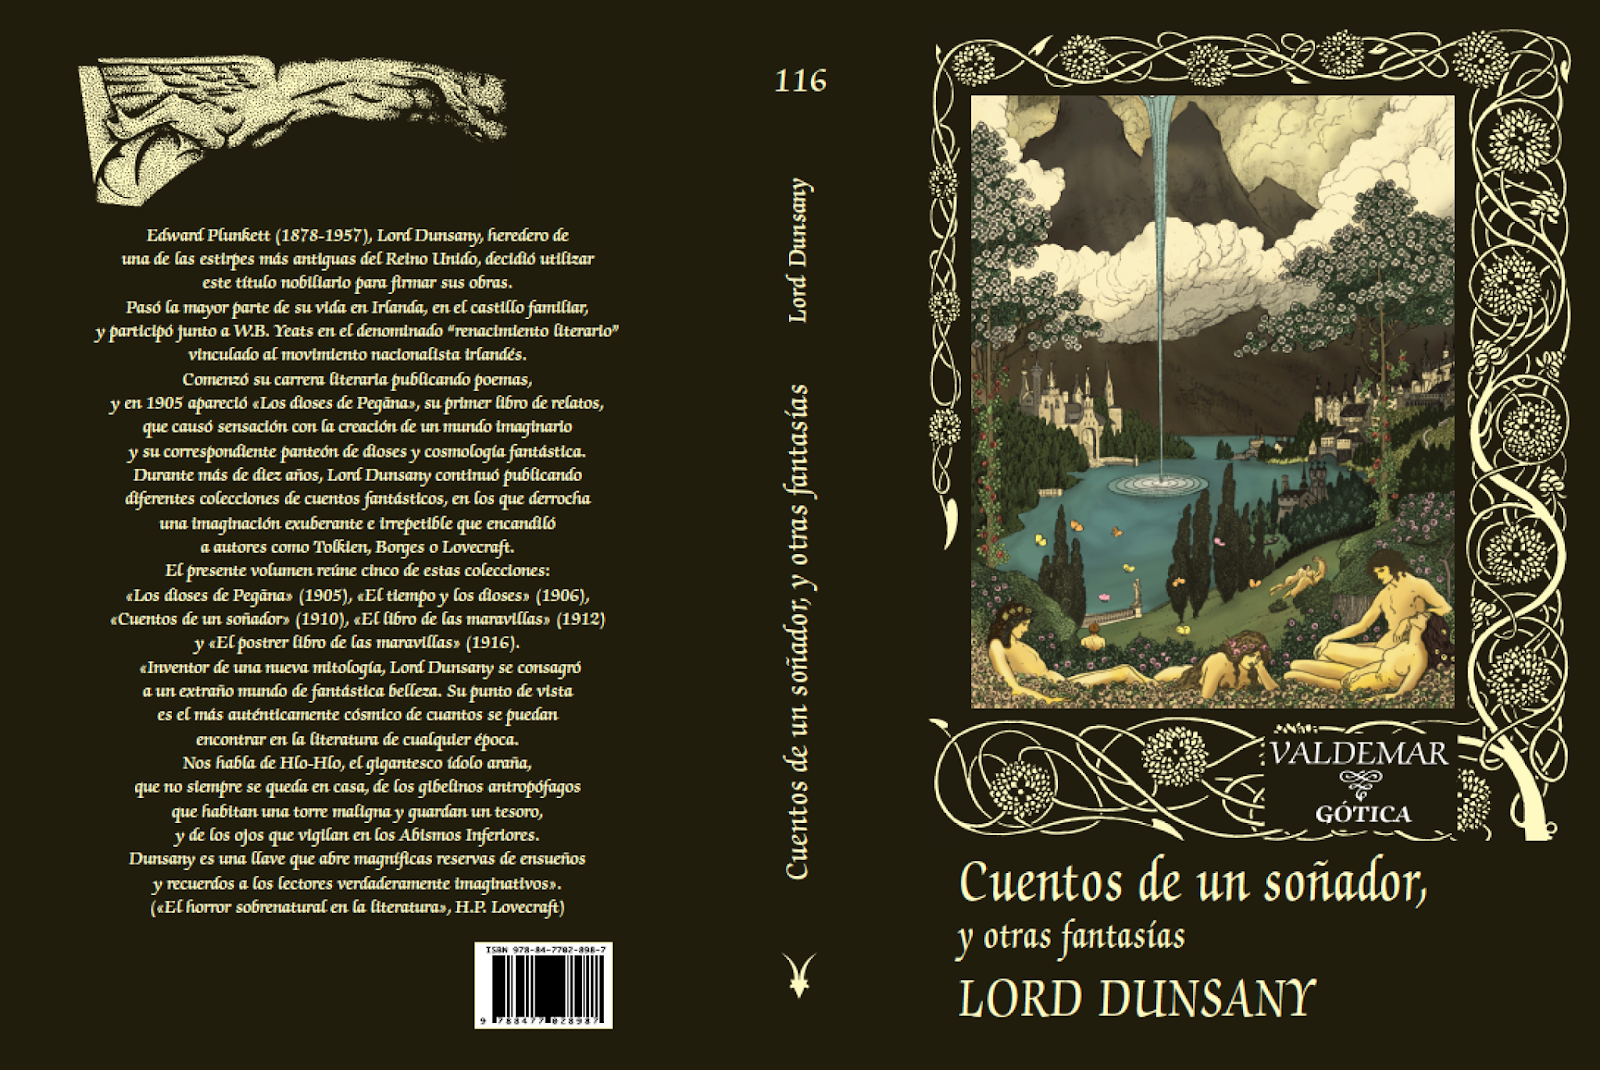 Lord dunsany LORD DUNSANY | Cuentos de un soñador | Poltarnees, la que mira al mar IMAGEN PROPIEDAD DE: VALDEMAR